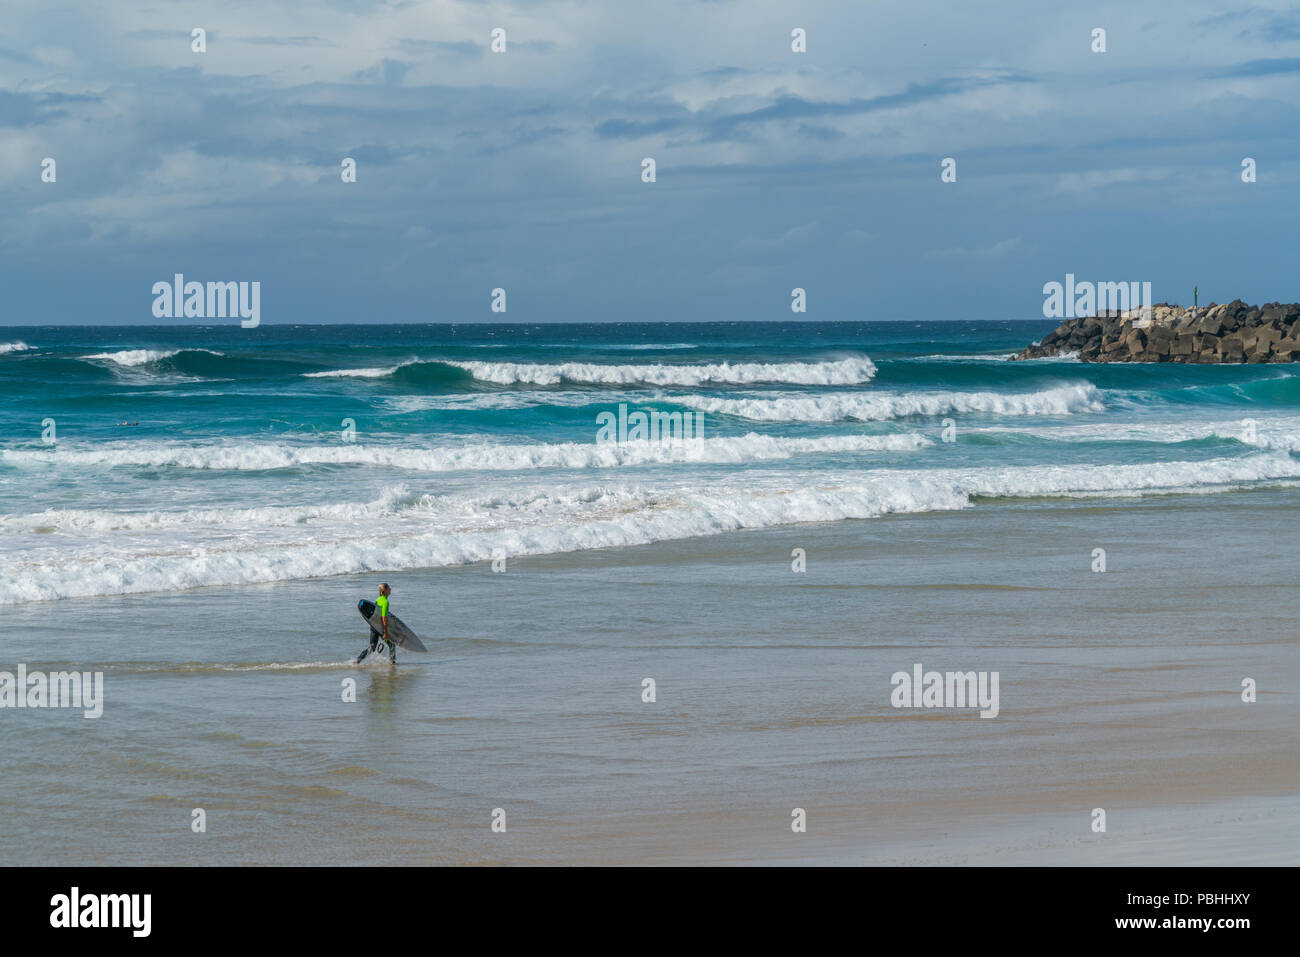 COOLANGATTA, AUSTRALIA - 10 de julio de 2018; la amplia playa de surf con surfer llevar tablas de surf a lo largo de la playa en frente del surf Foto de stock